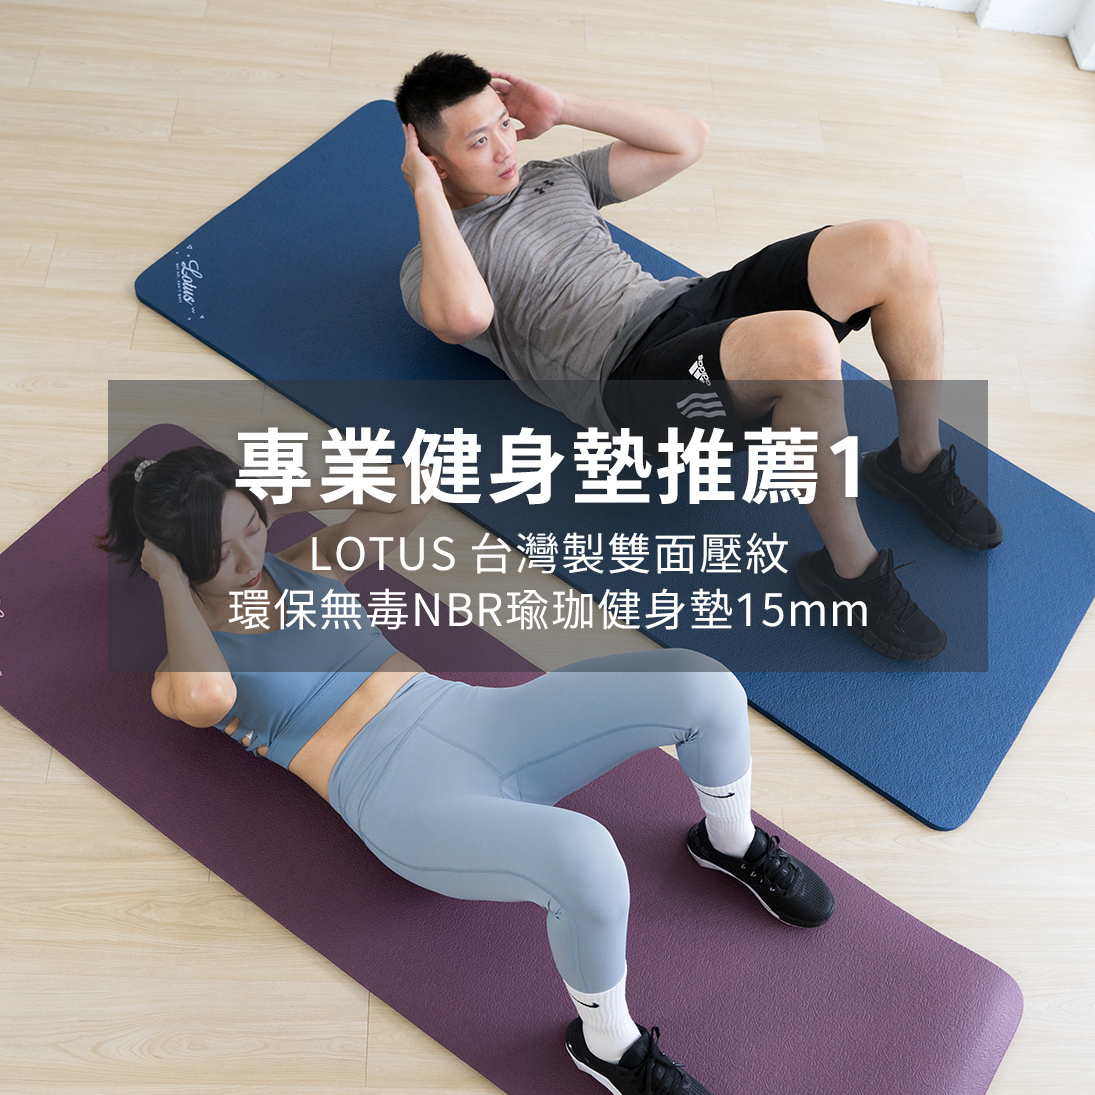 健身墊推薦:LOTUS台灣製雙面壓紋環保無毒NBR健身墊15mm